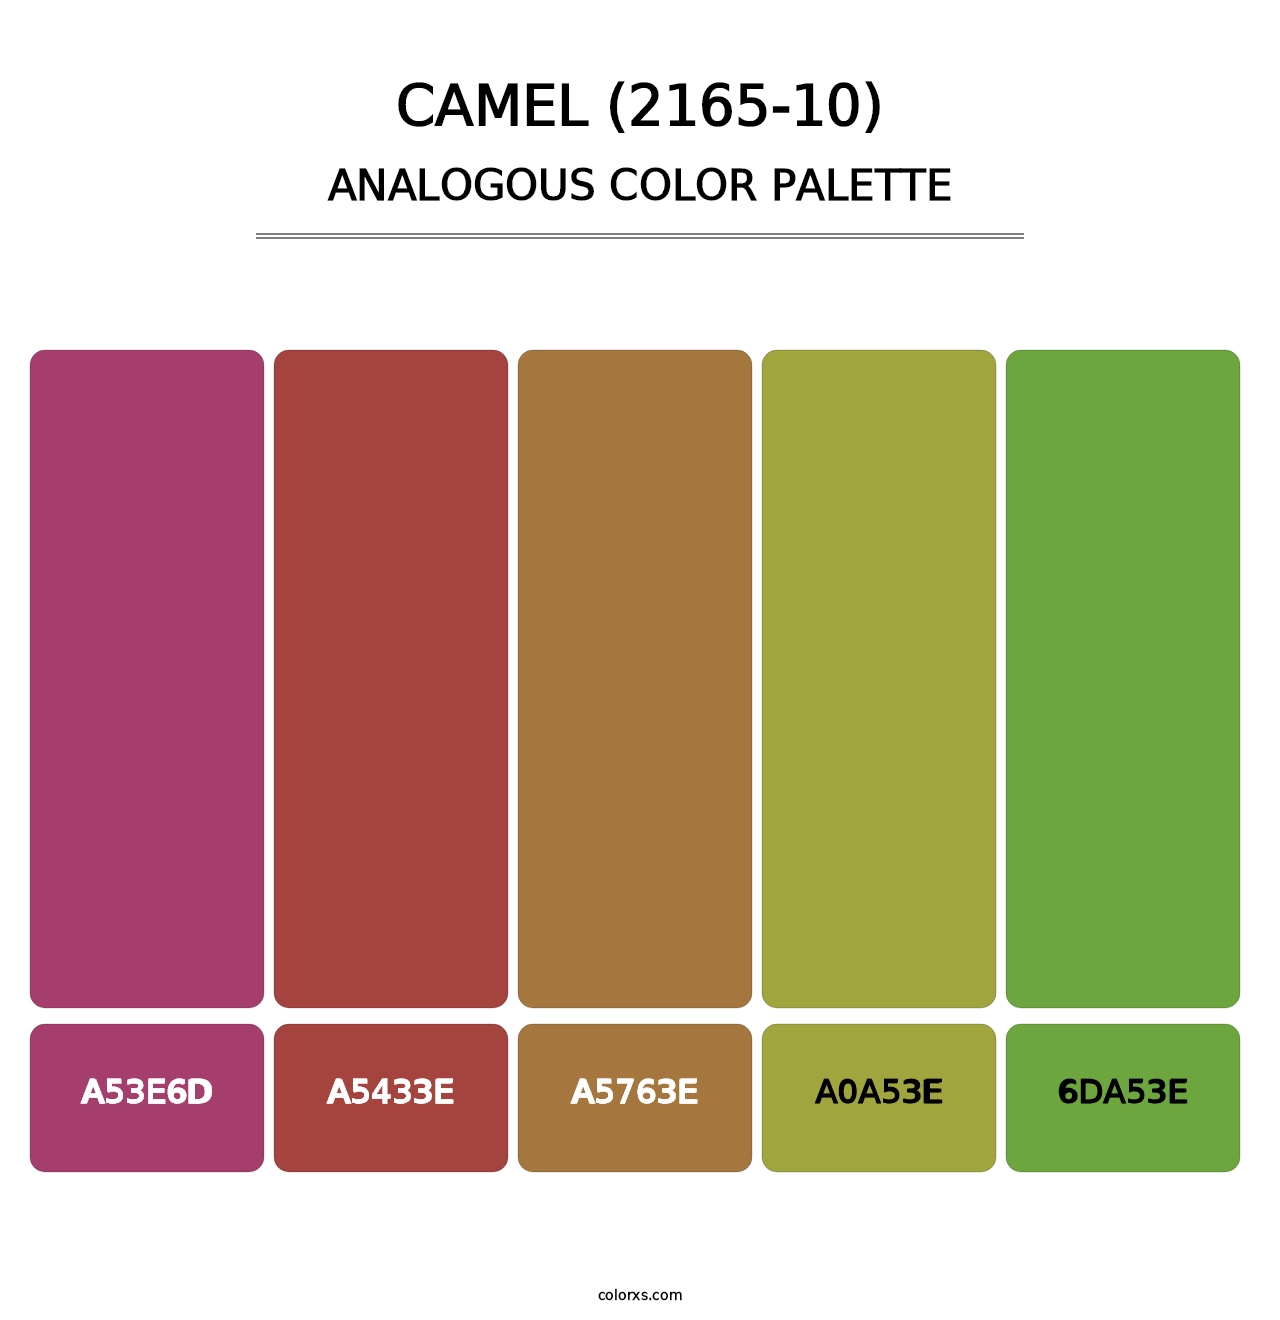 Camel (2165-10) - Analogous Color Palette